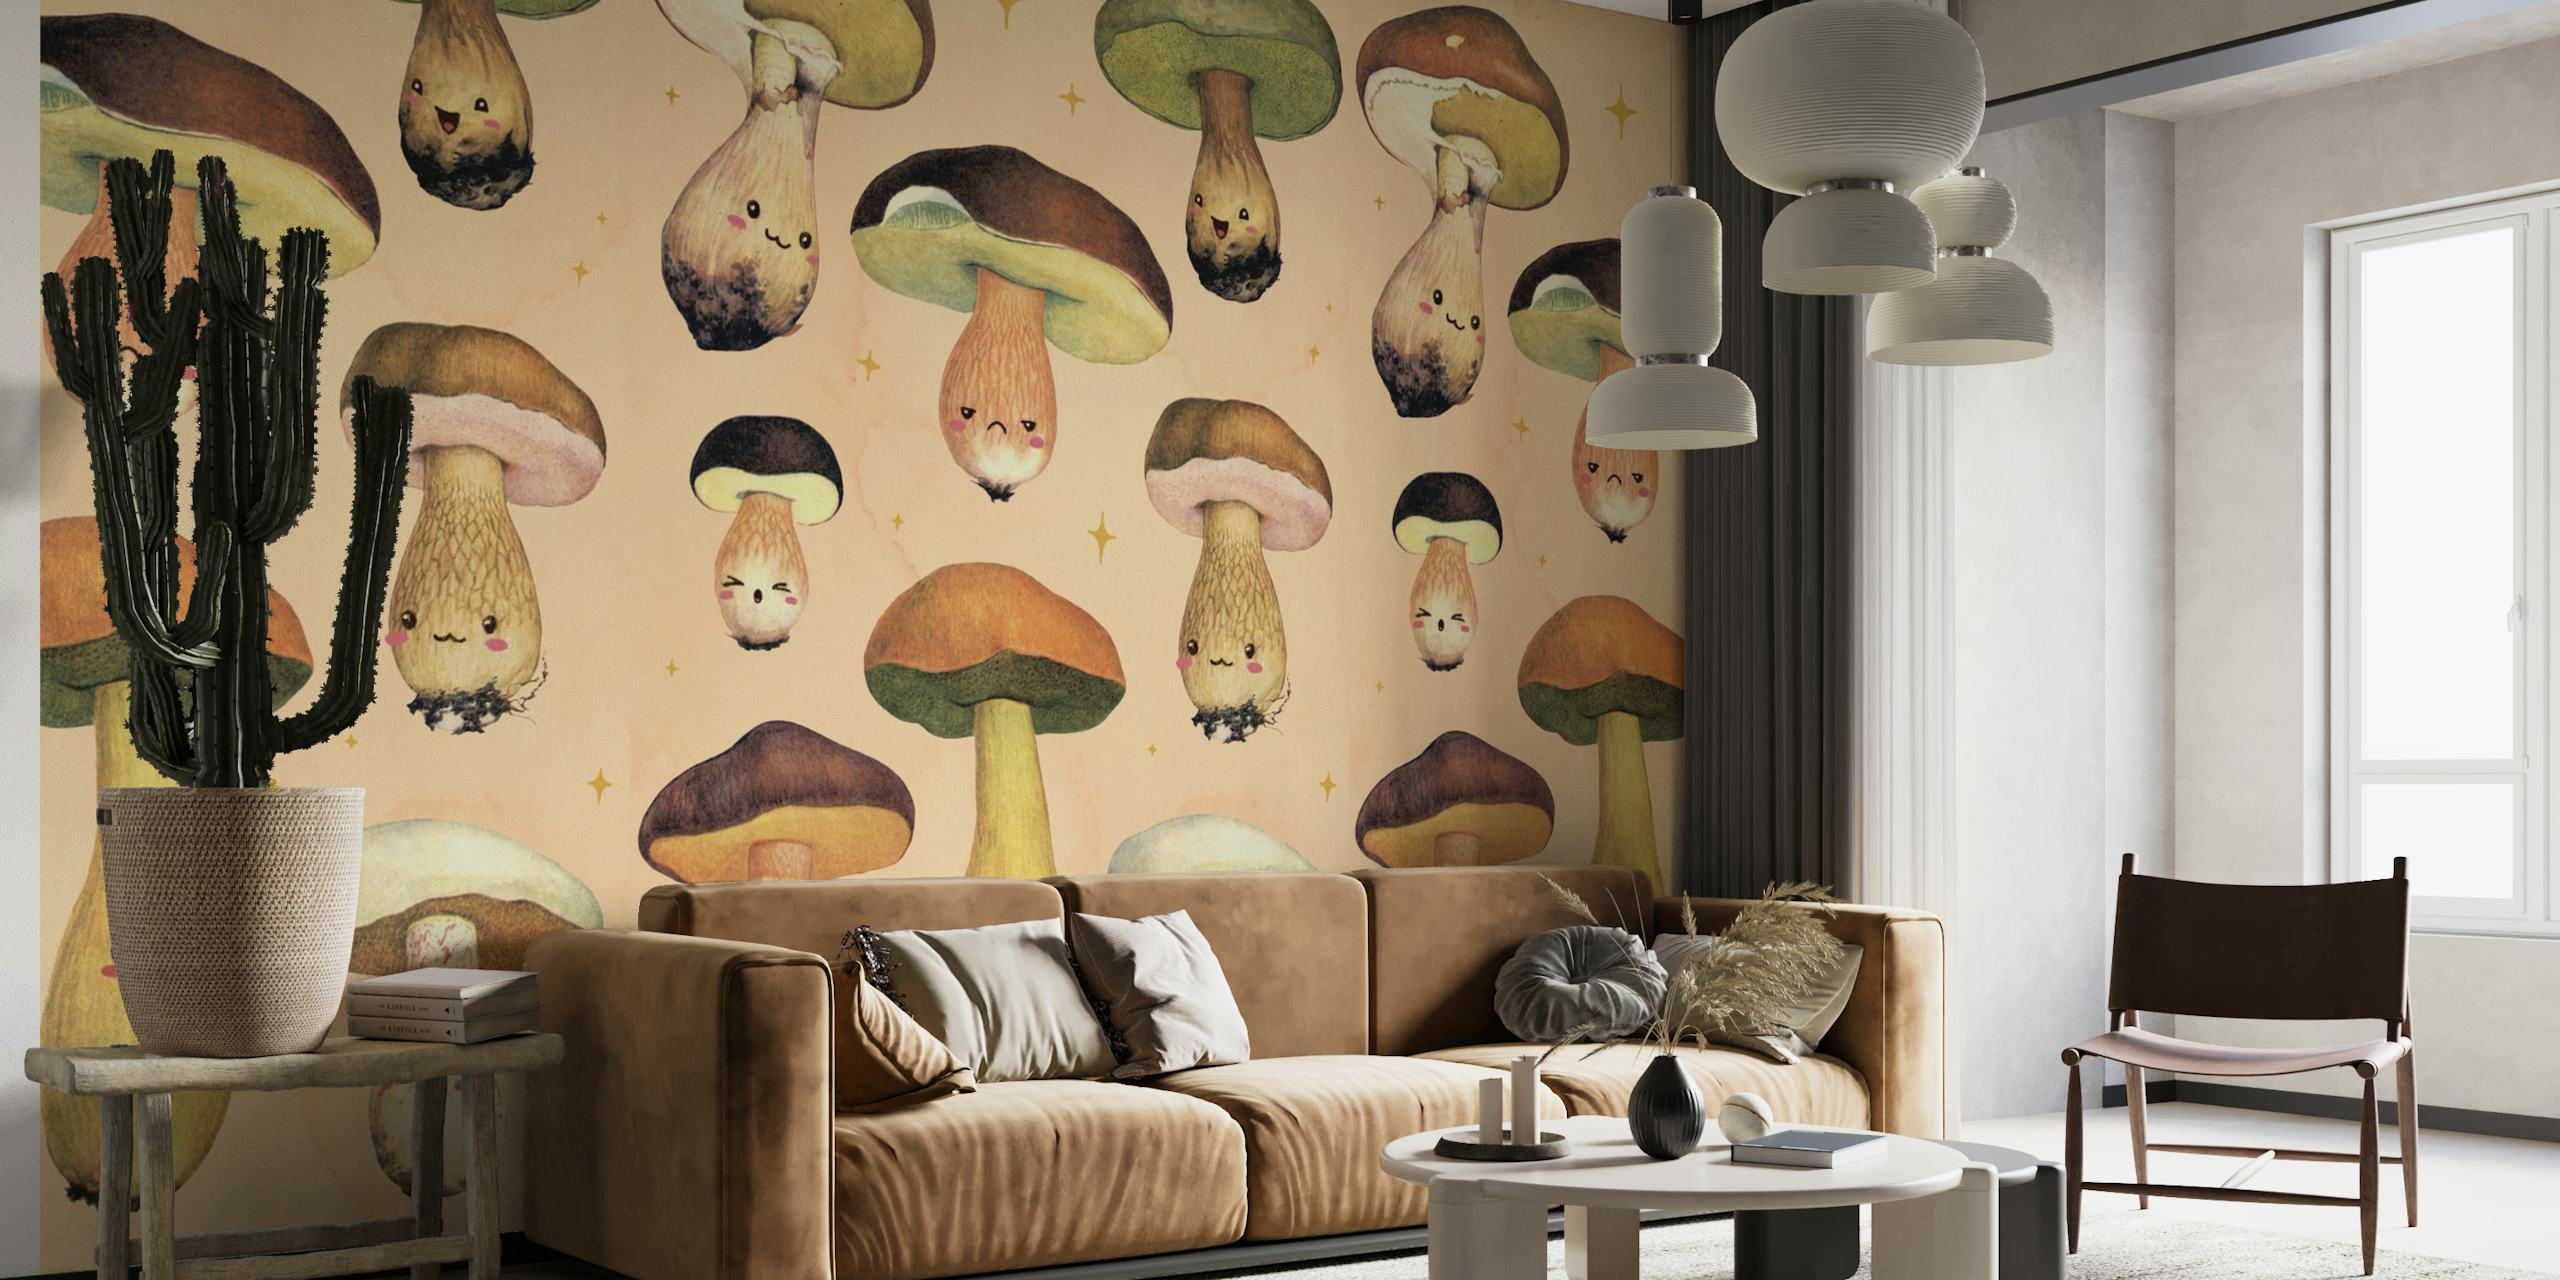 Geïllustreerde Happy Forest Mushroom muurschildering met grillige paddestoelkarakters op een warme achtergrond